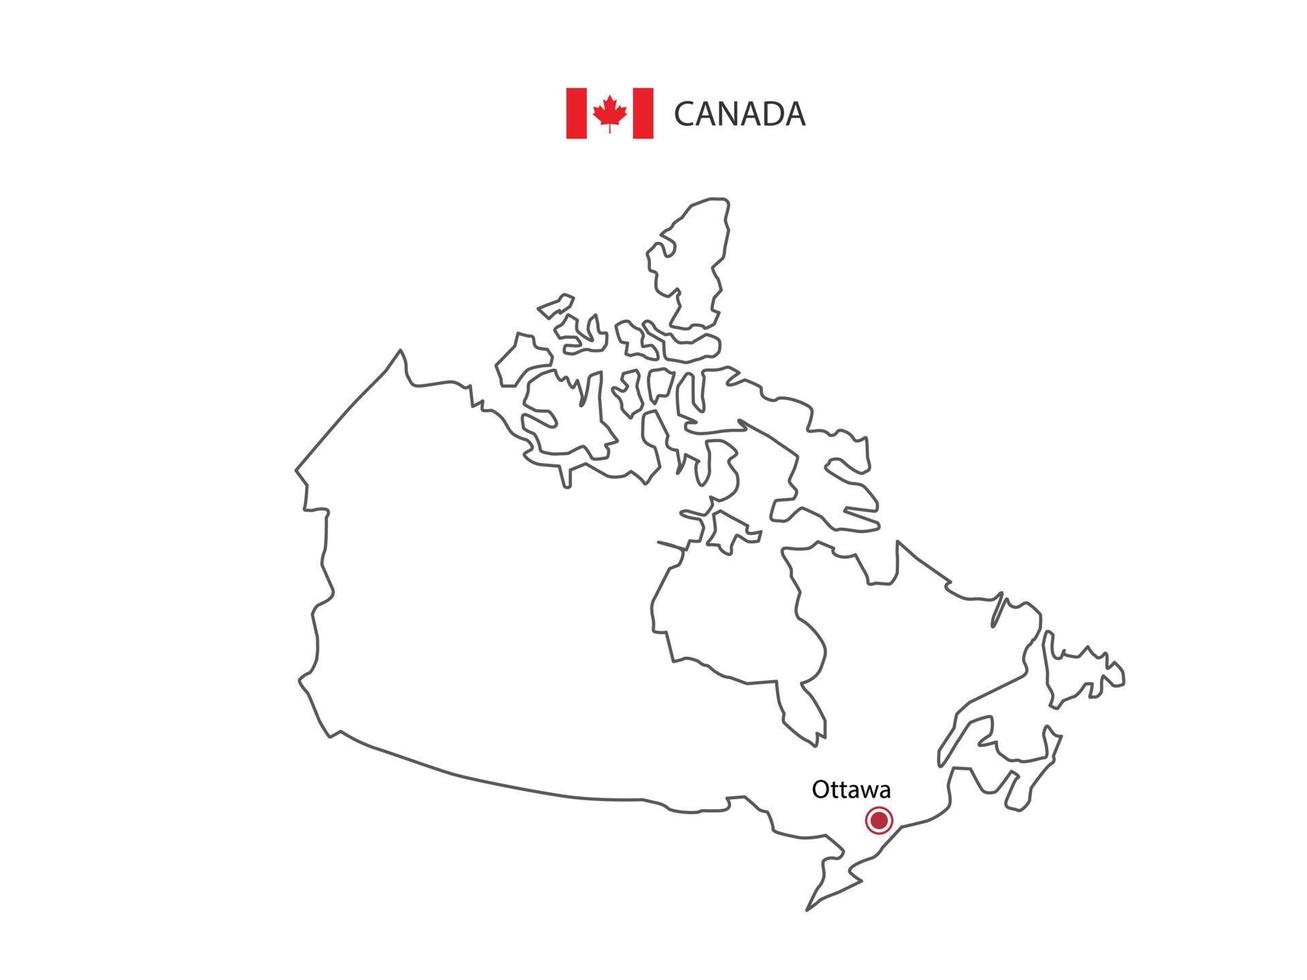 mão desenhar vetor de linha preta fina do mapa do Canadá com capital ottawa em fundo branco.